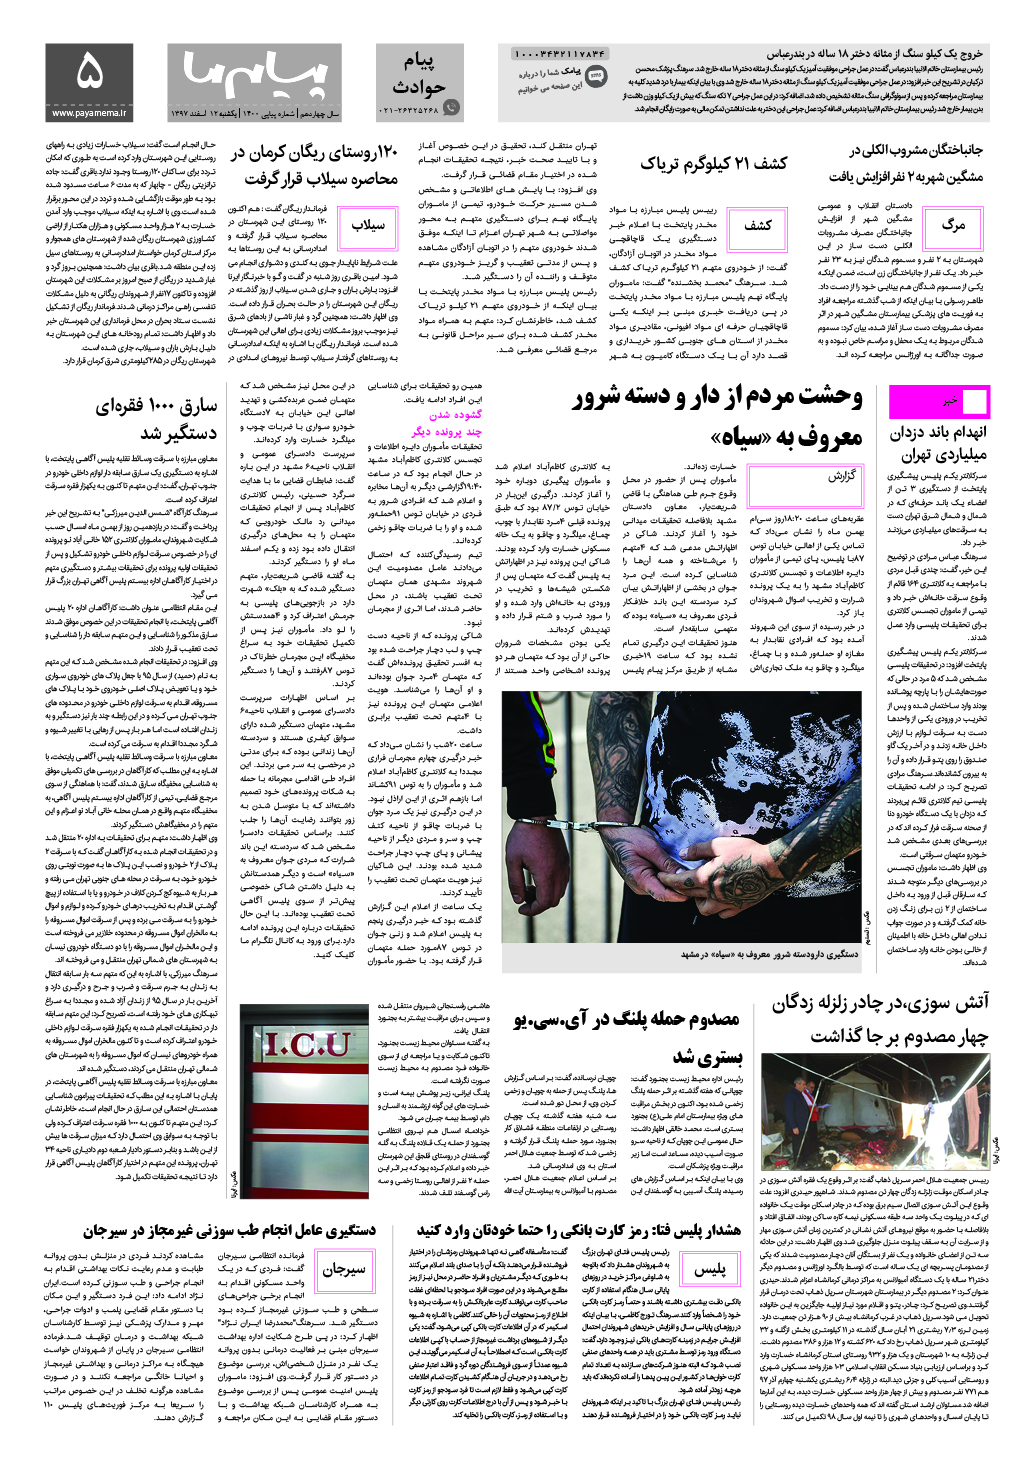 صفحه پیام حوادث شماره 1400 روزنامه پیام ما